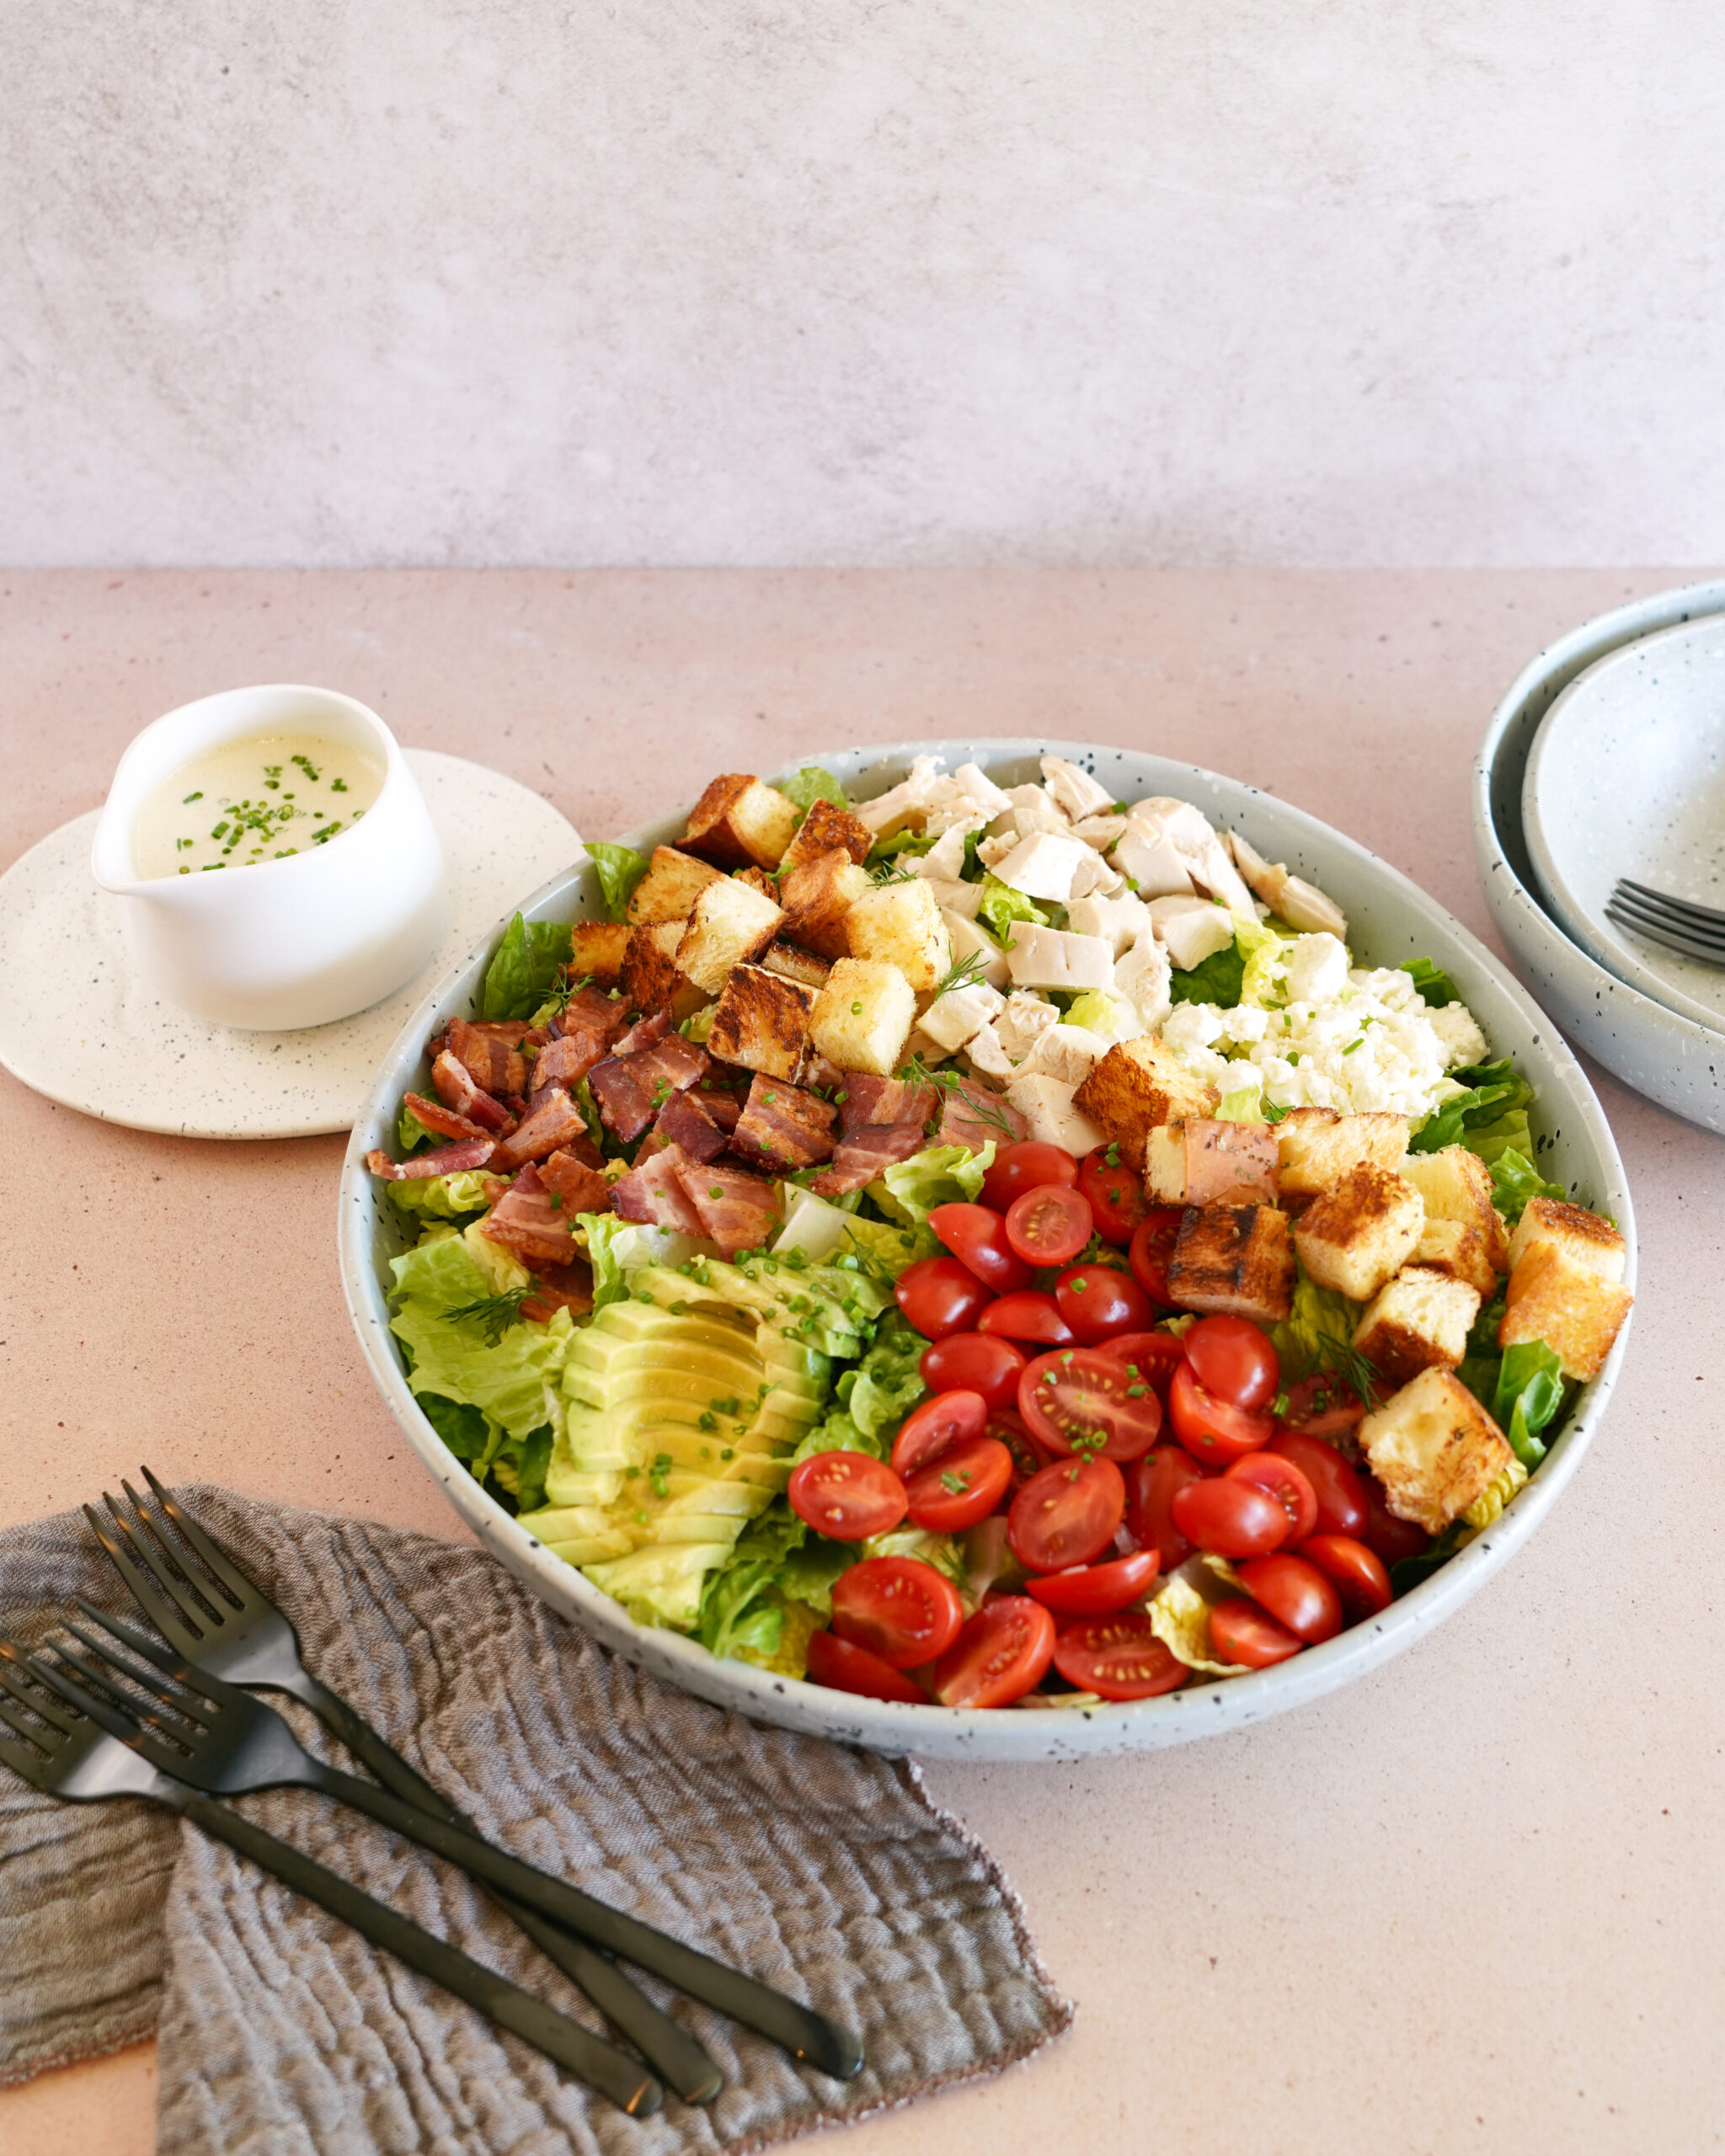 Chicken “BLT” Salad